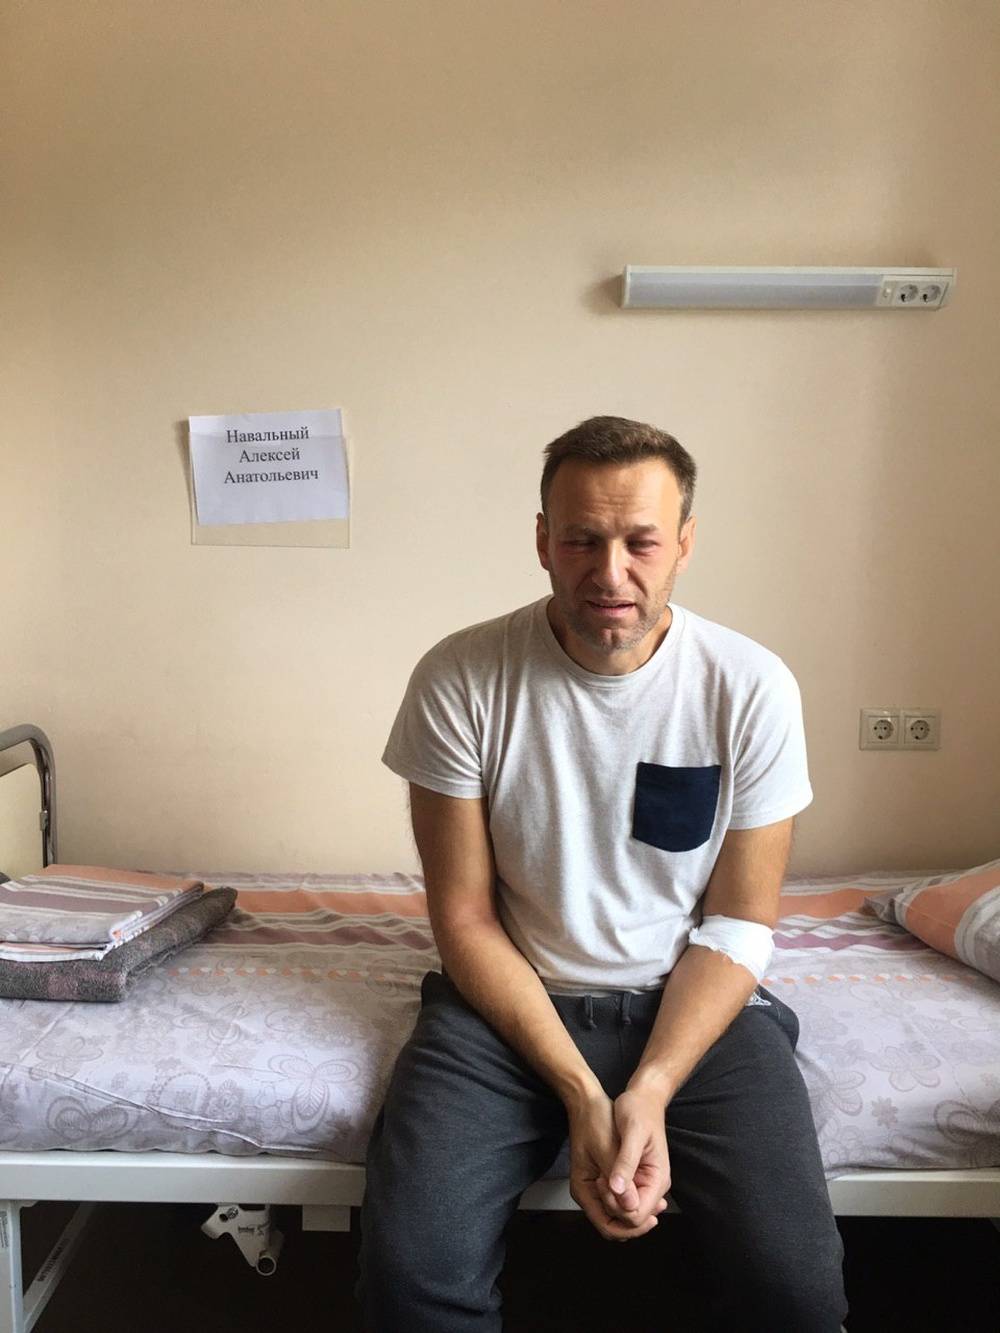 Алексей навальный — биография, личная жизнь, фото, новости, «твиттер», «ютьюб», «инстаграм», hbo max, срок 2022 - 24сми